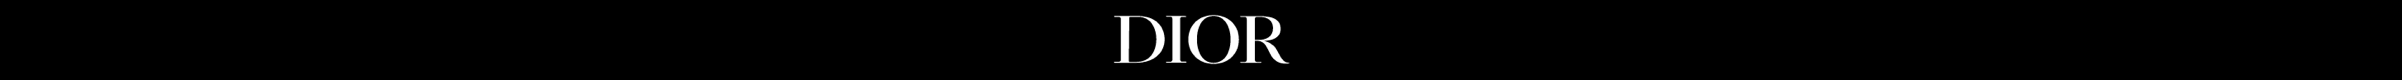 Ribbon Banner PDP Dior